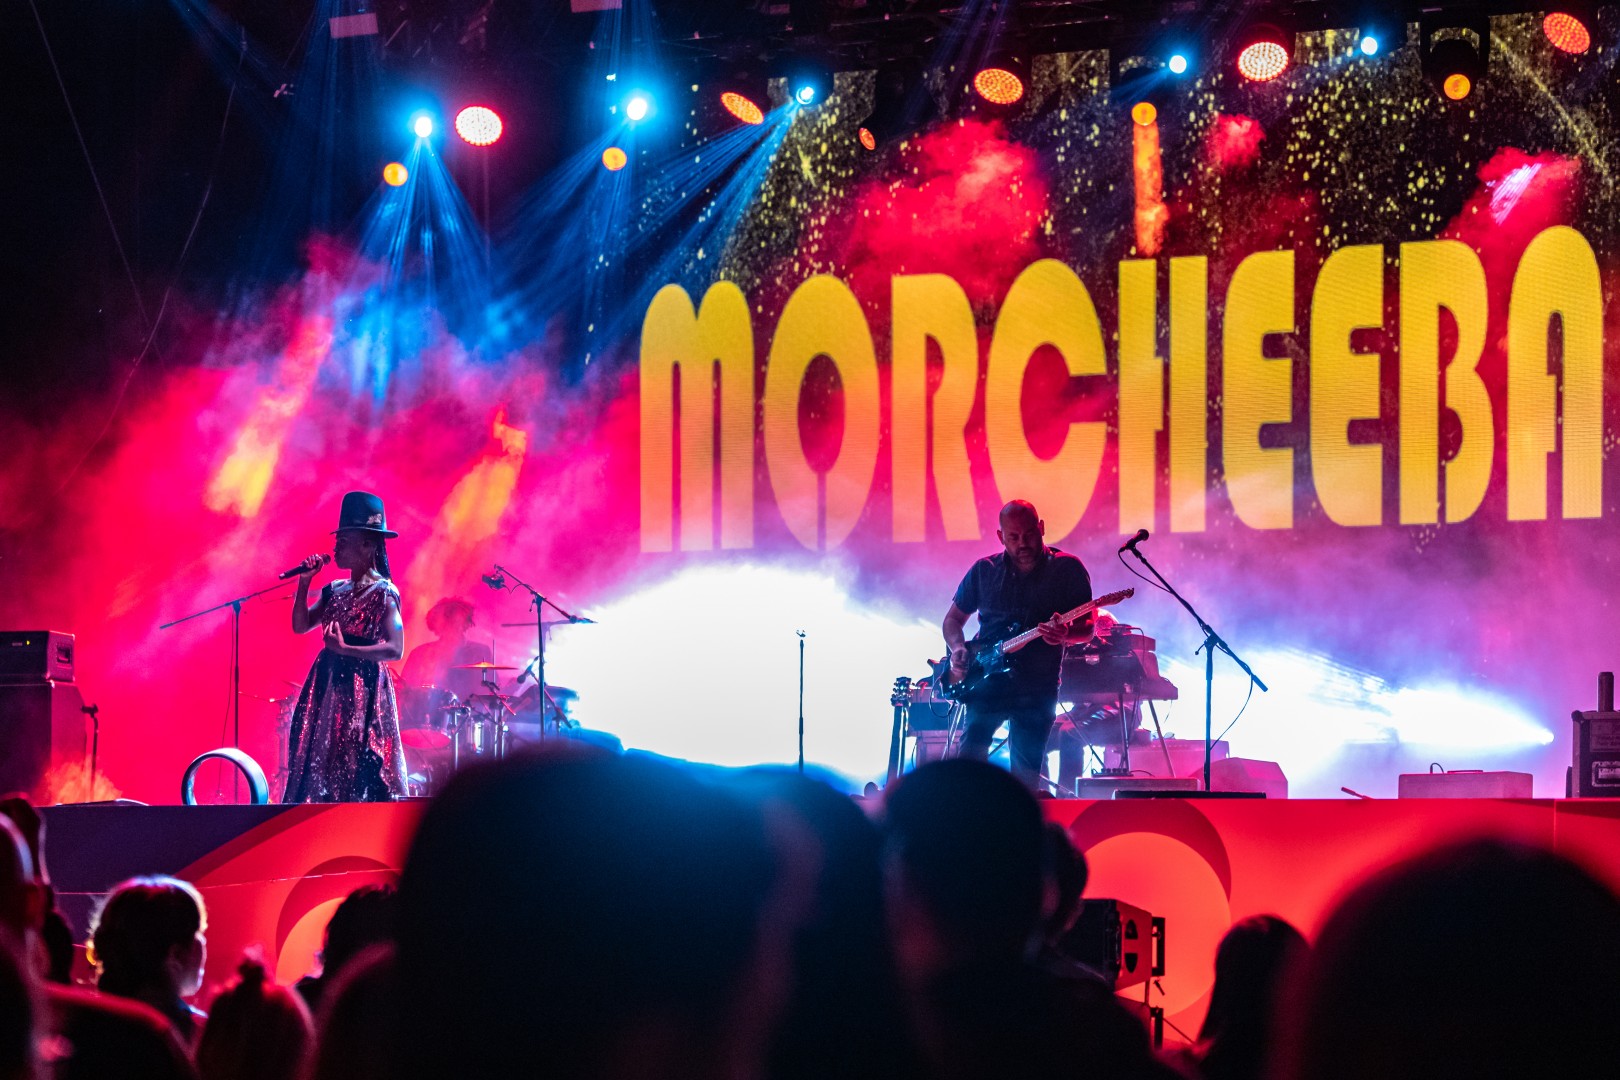 Morcheeba at Romexpo in Bucharest on September 9, 2018 (acdd30ec8b)